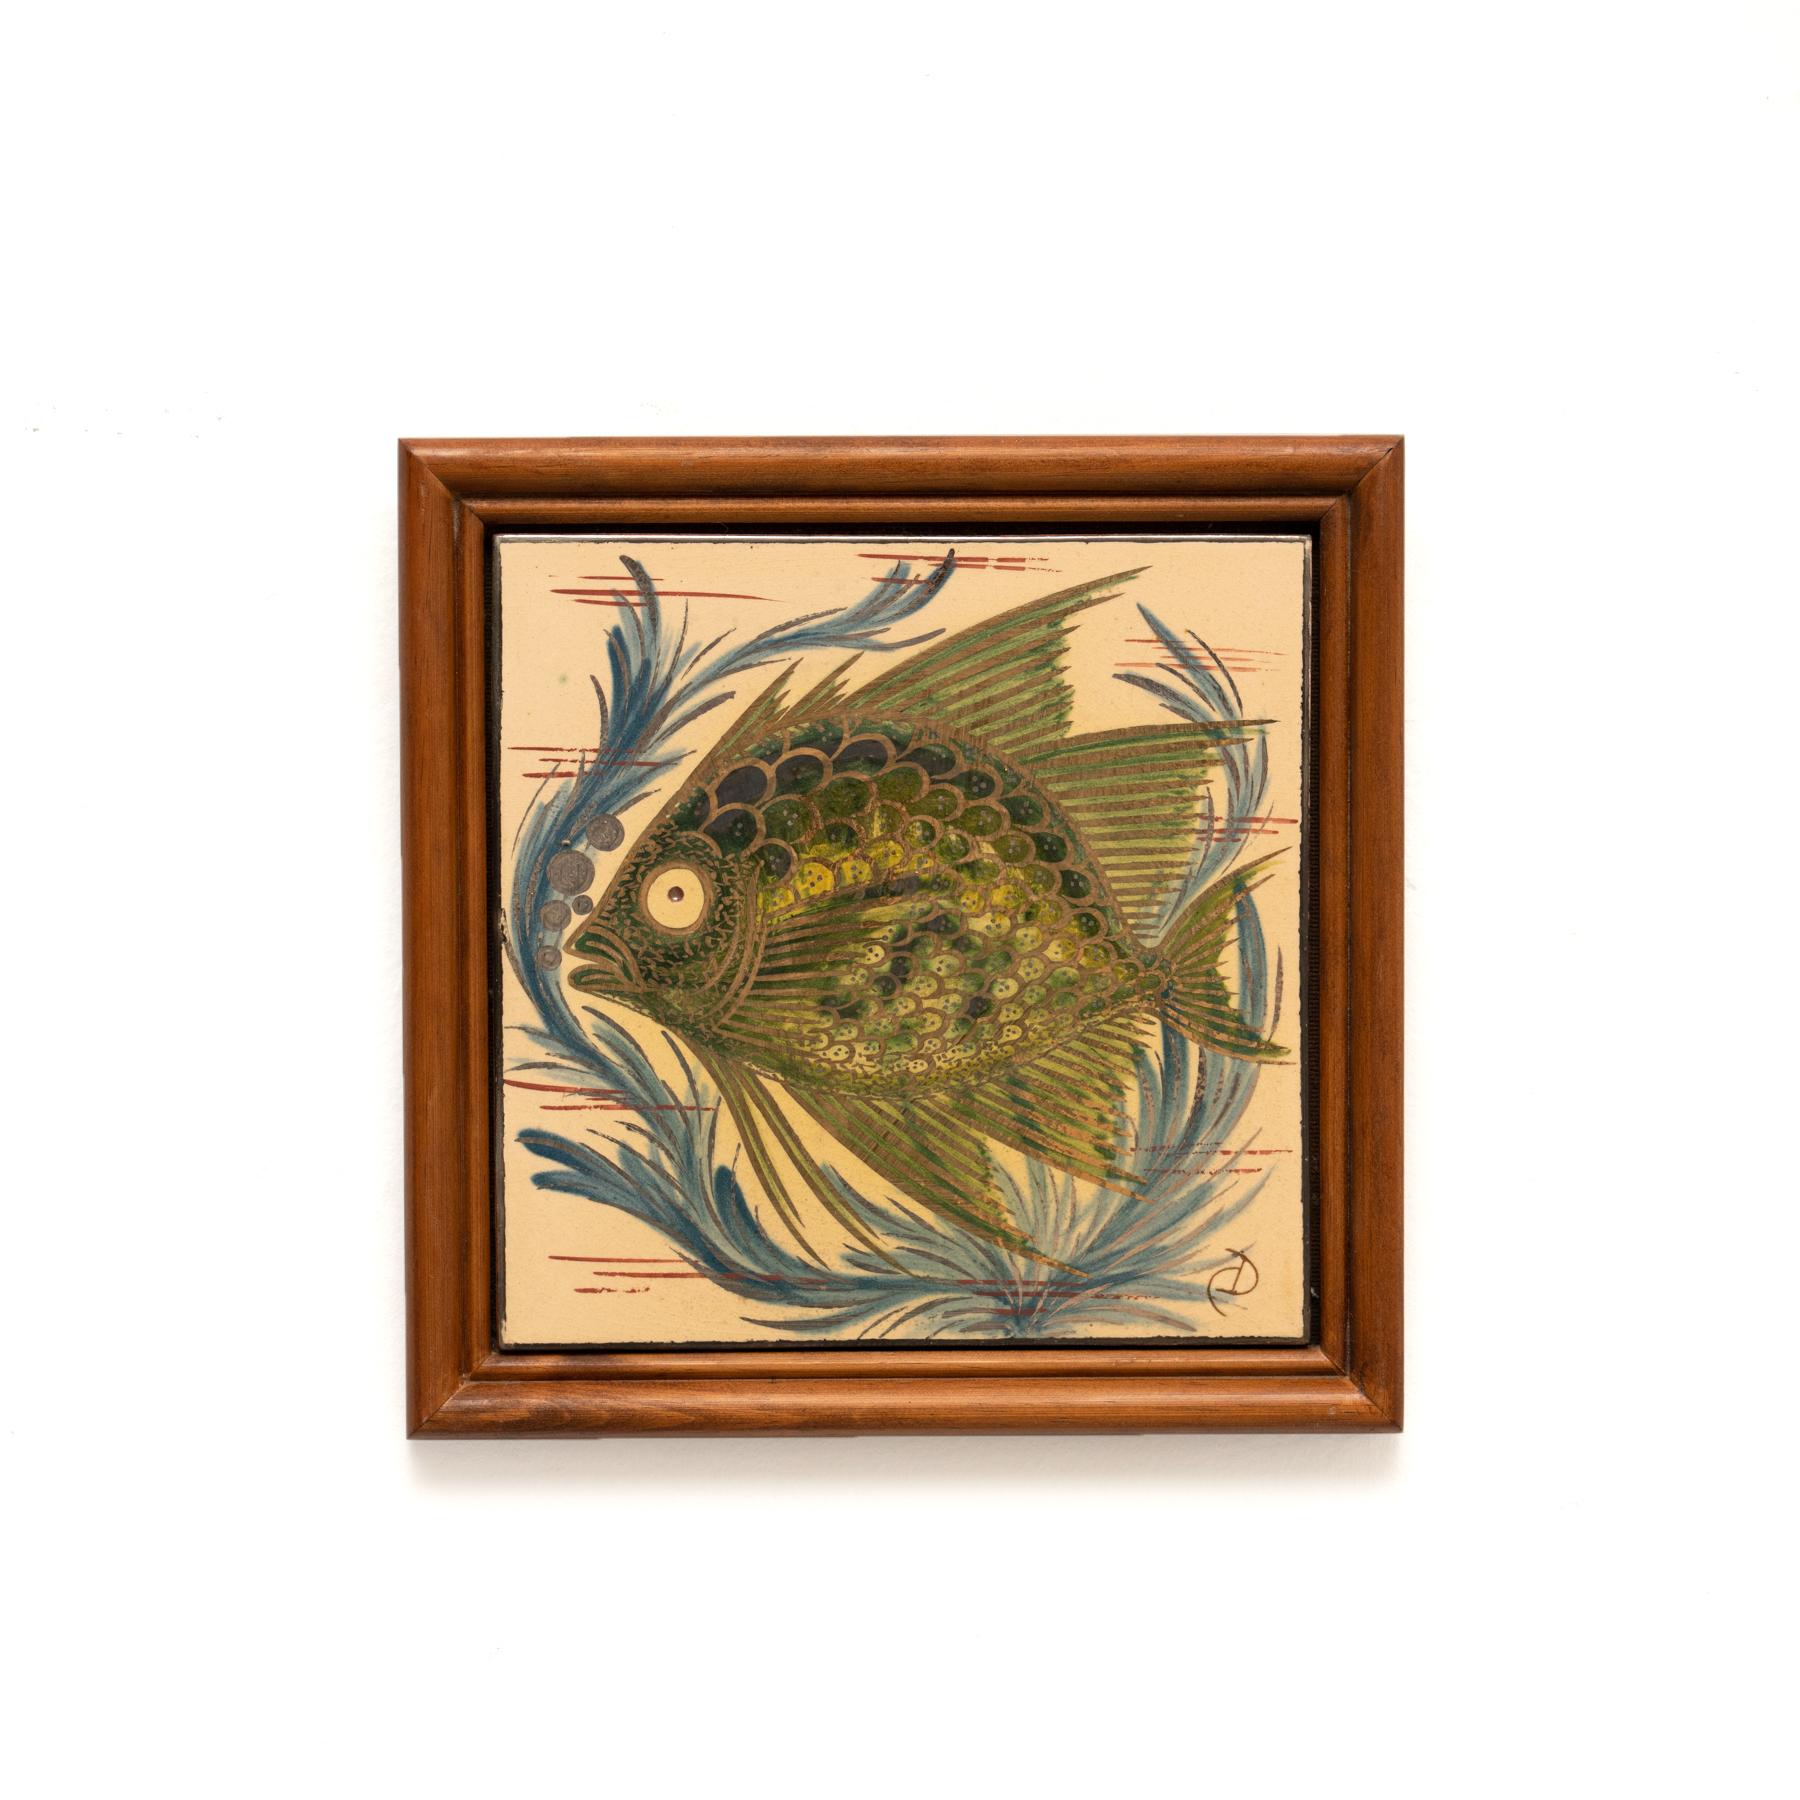 Œuvre d'art en céramique peinte à la main représentant un poisson, réalisée par l'artiste catalan Diaz Costa, vers 1960.
Encadré. Signé.

En état d'origine, avec une usure mineure conforme à l'âge et à l'utilisation, préservant une belle patine.